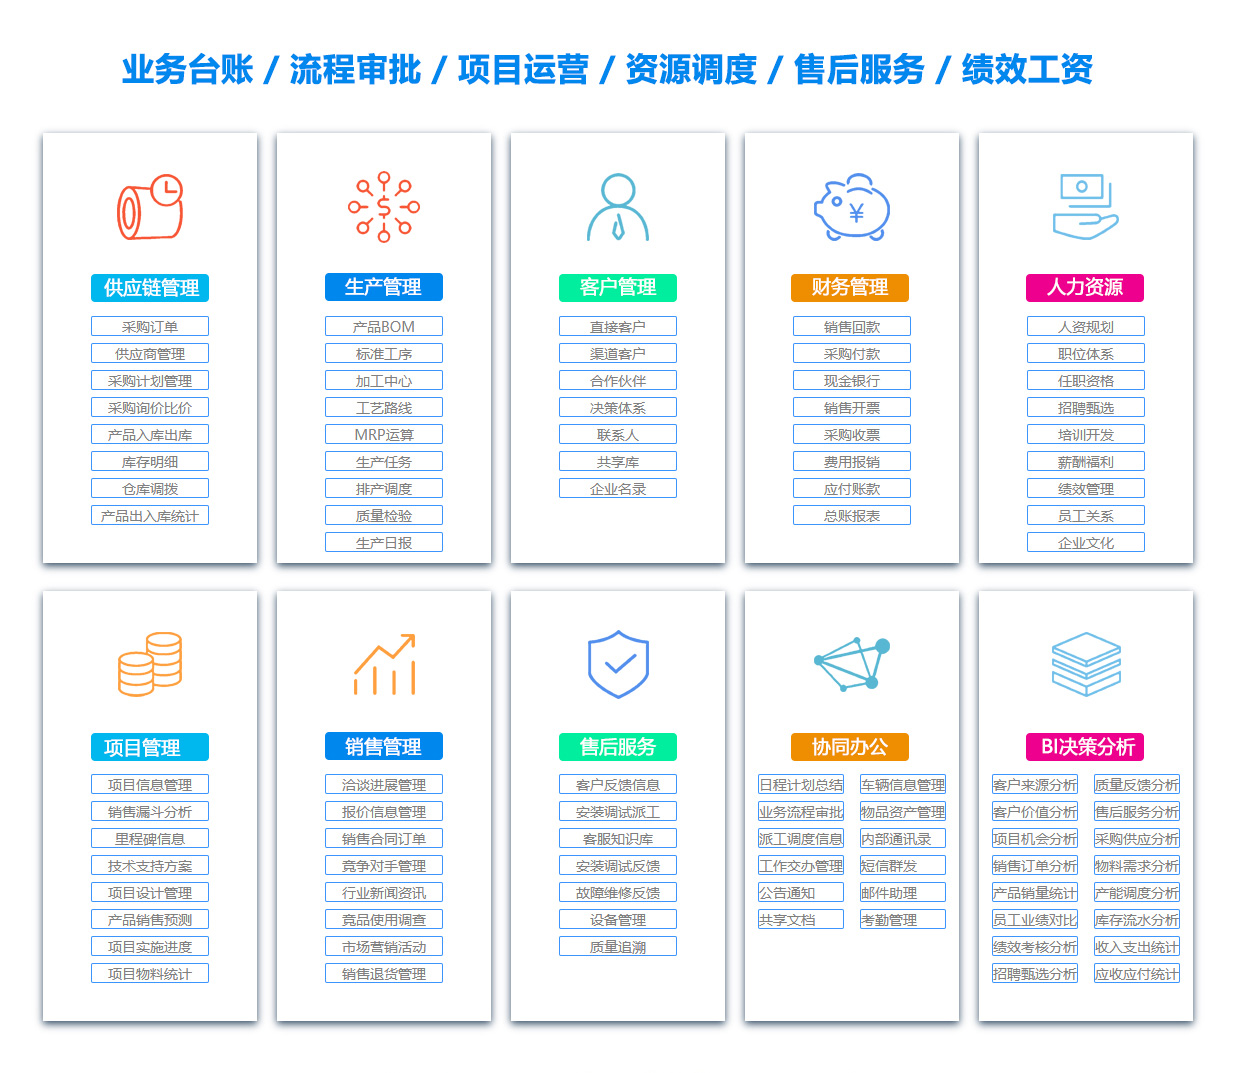 桂林MIS:信息管理系统